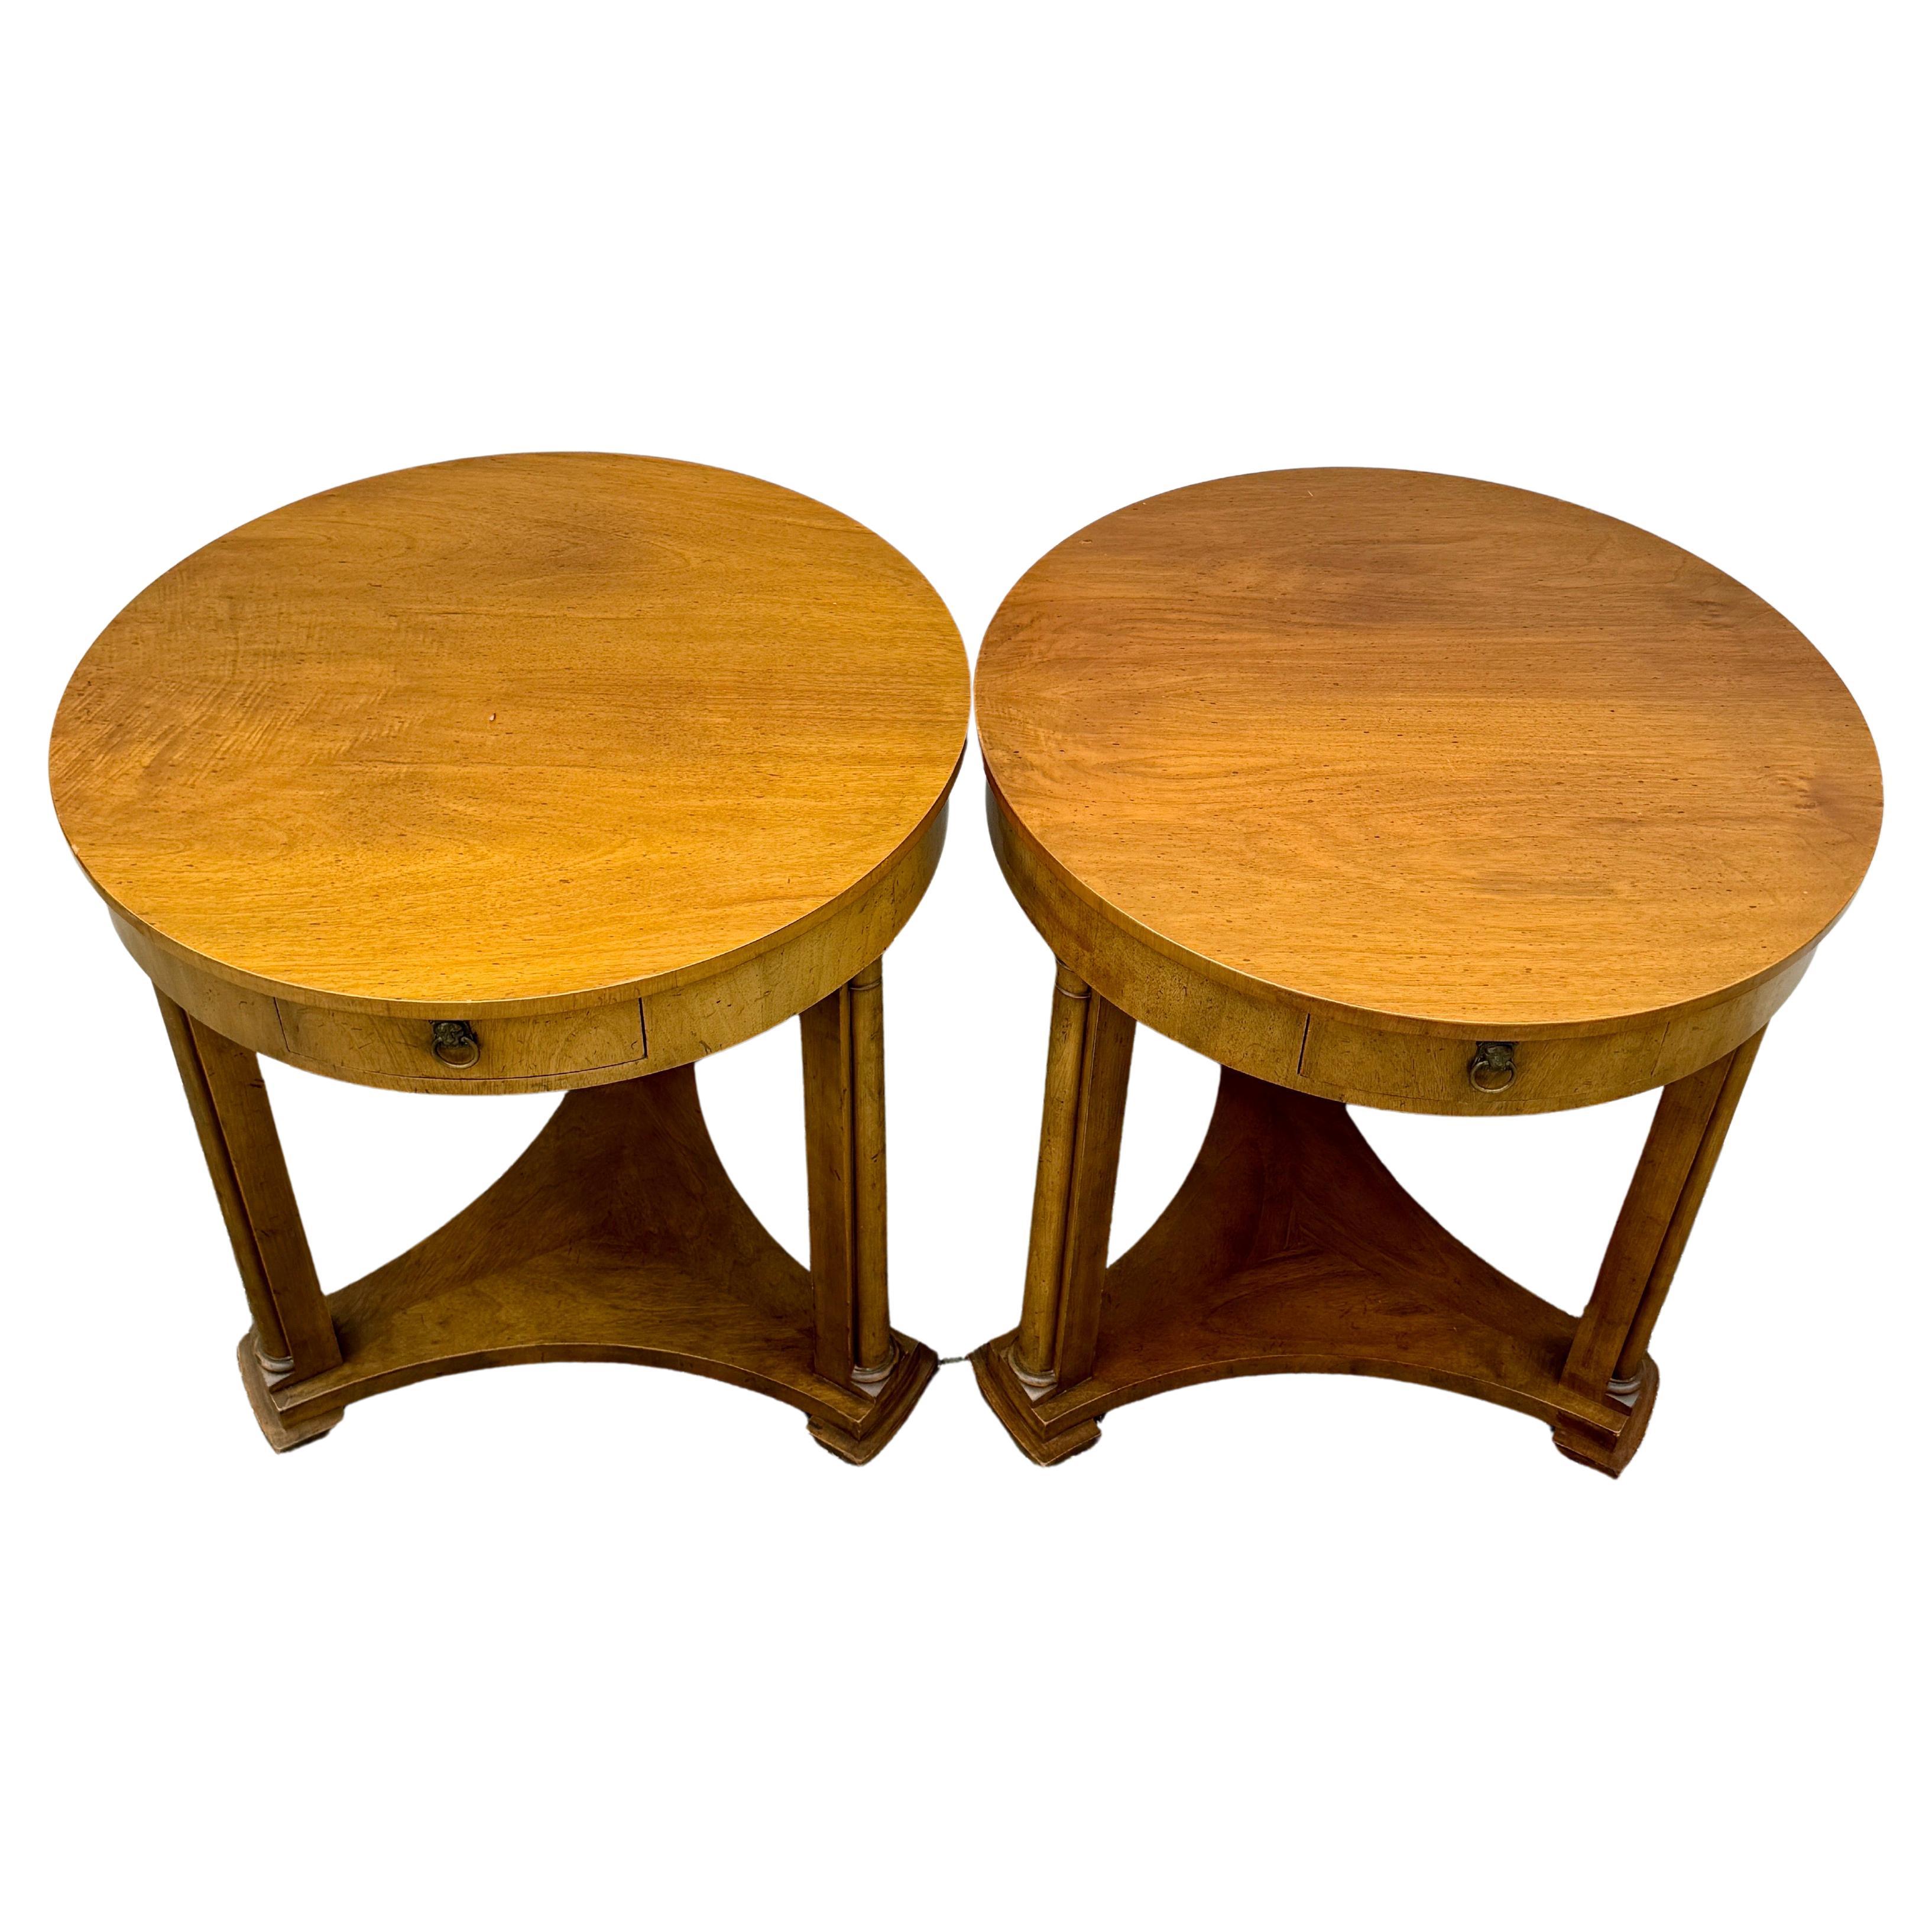 Baker Furniture Runde Ende Seite Mitte Halle Tische, ein Paar

Ein klassisches Paar Holztische im Vintage-Stil von Baker Furniture, die sehr vielseitig für die heutige Inneneinrichtung sind. Diese Tische haben jeweils eine Schublade mit Löwengriff